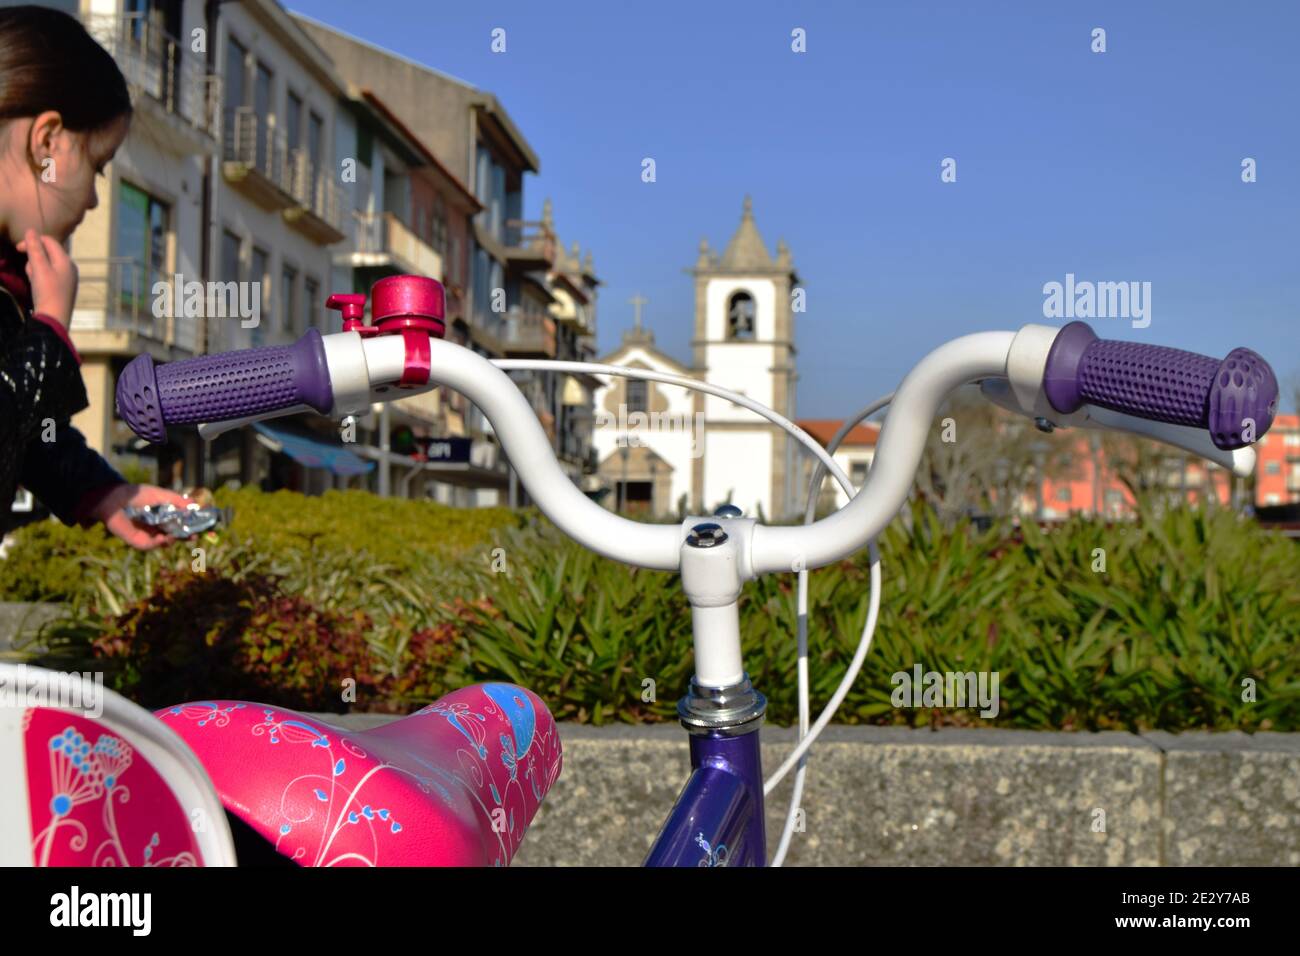 Bambina vicina alla sua prima bicicletta con una chiesa sullo sfondo, crescendo i tempi e imparando a guidare una bicicletta Foto Stock